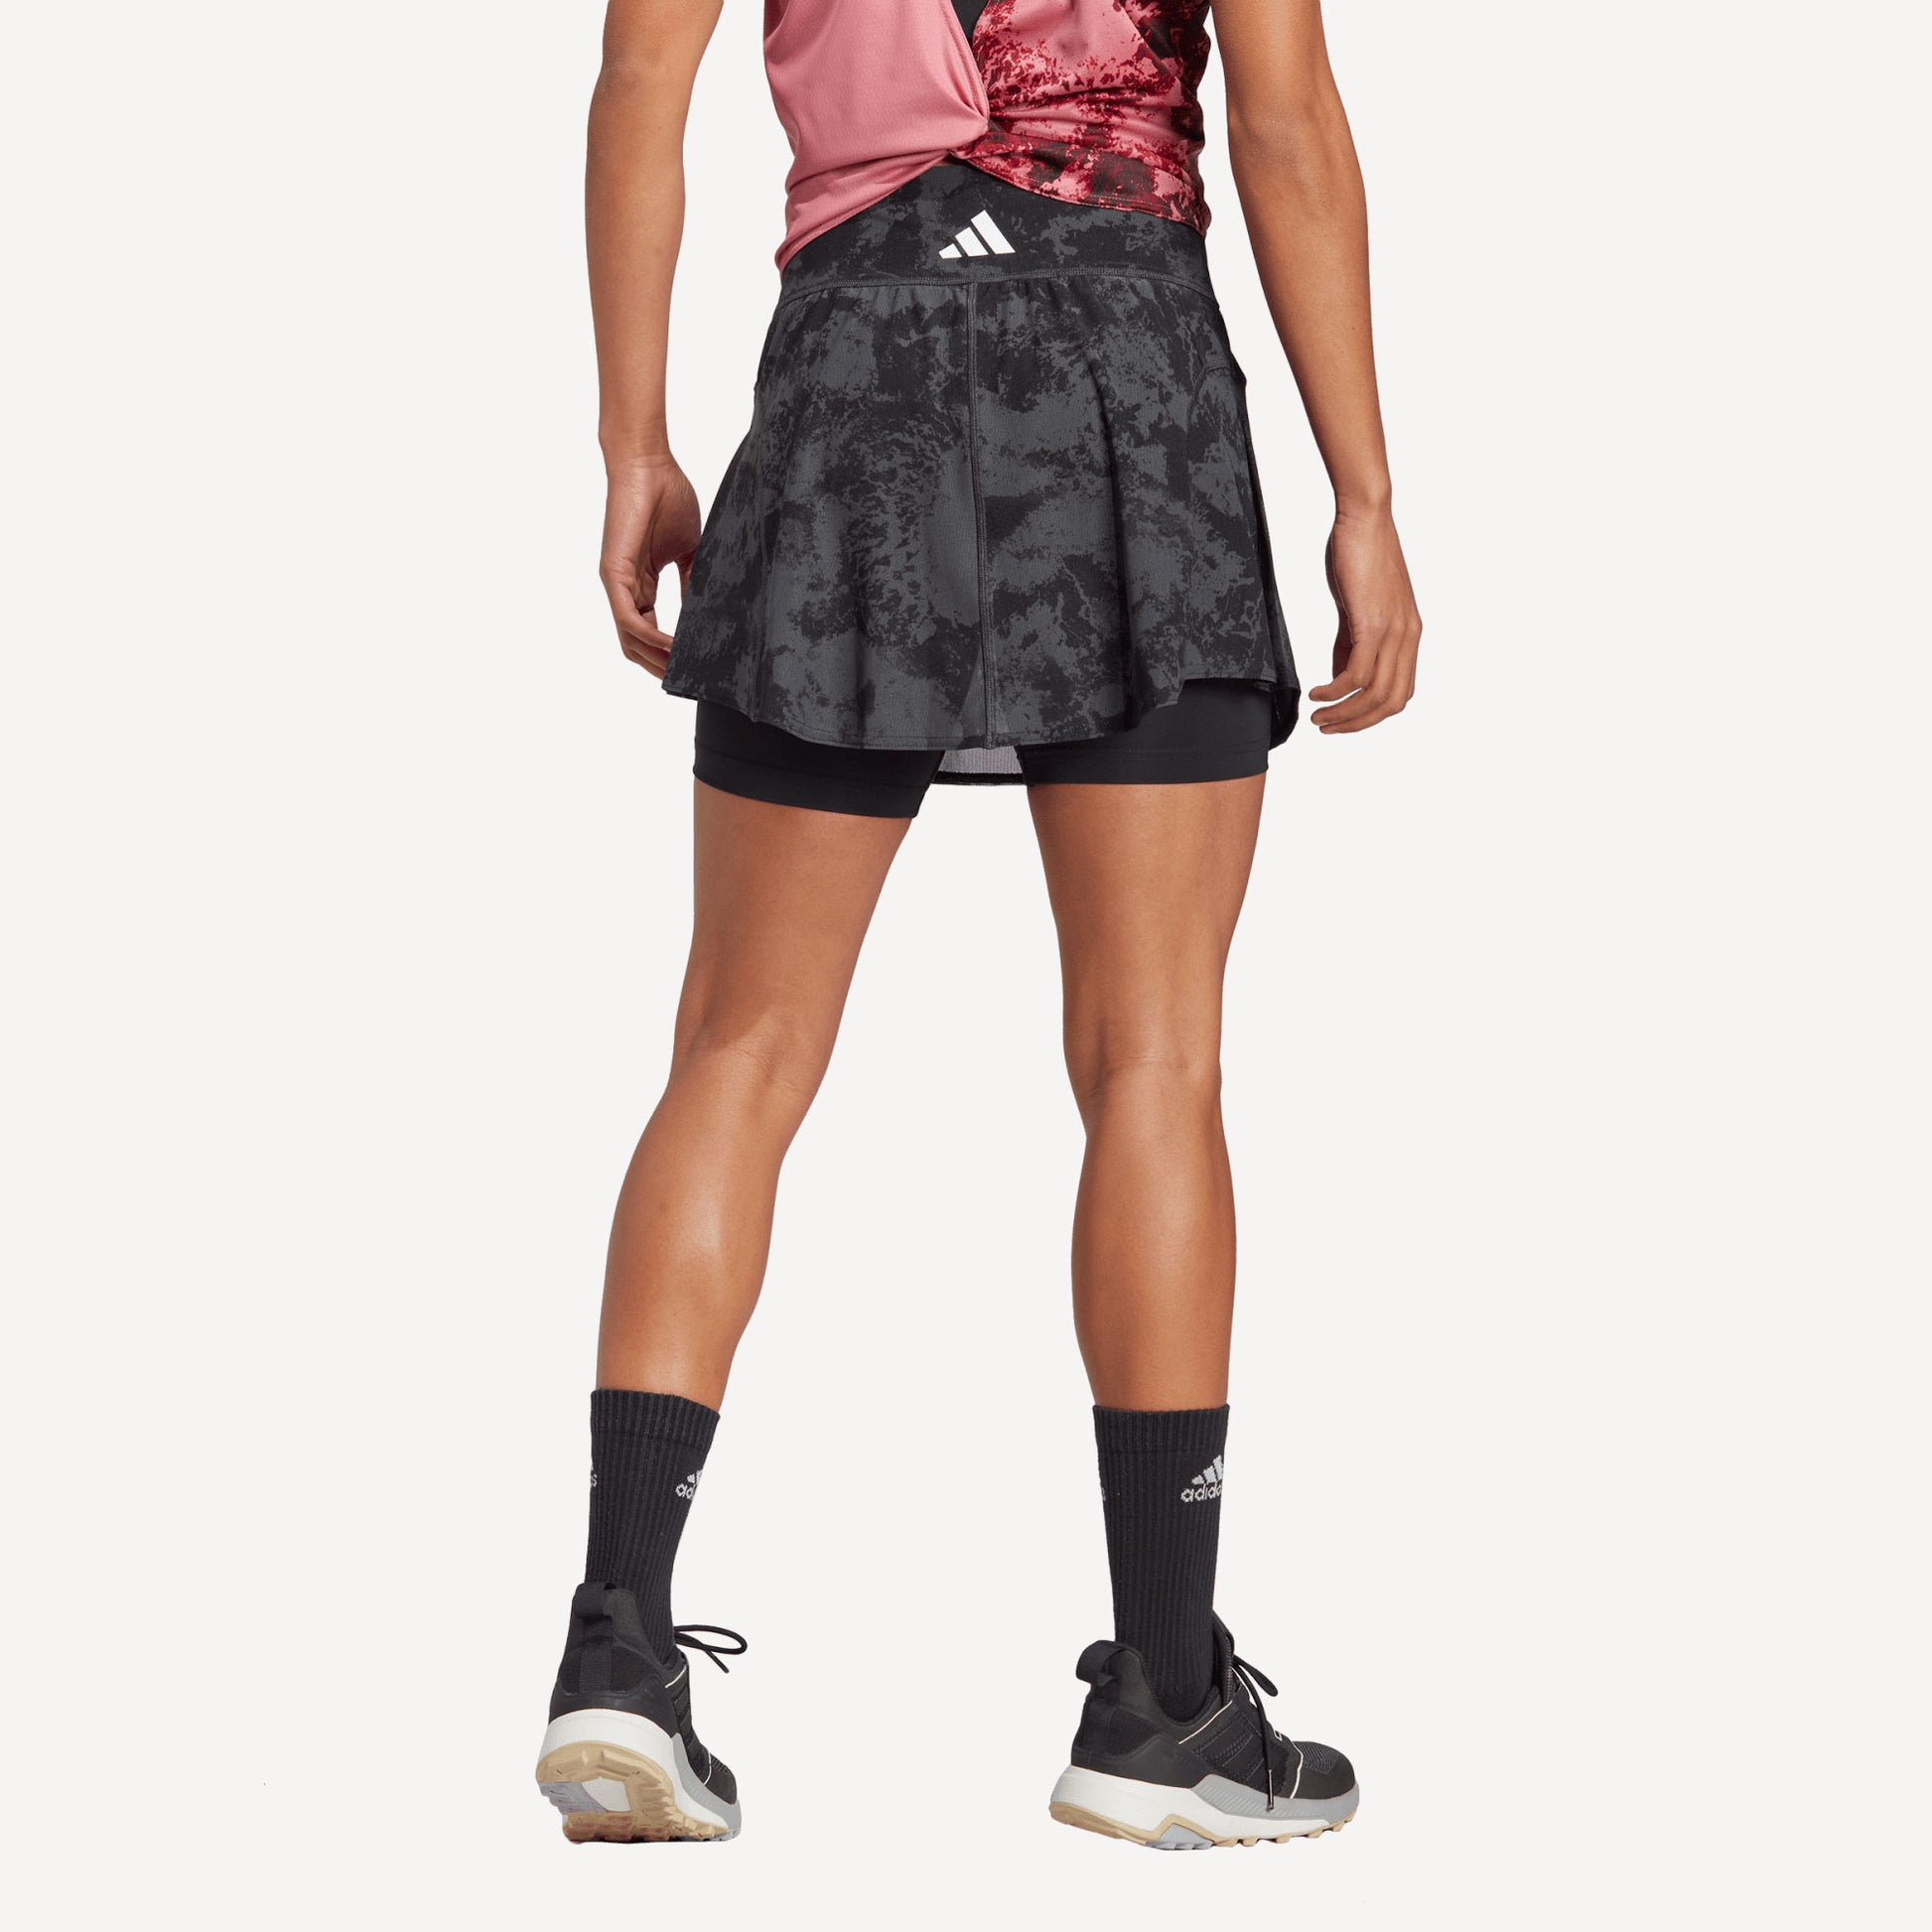 adidas Paris Match Women's Tennis Skirt Grey (2)